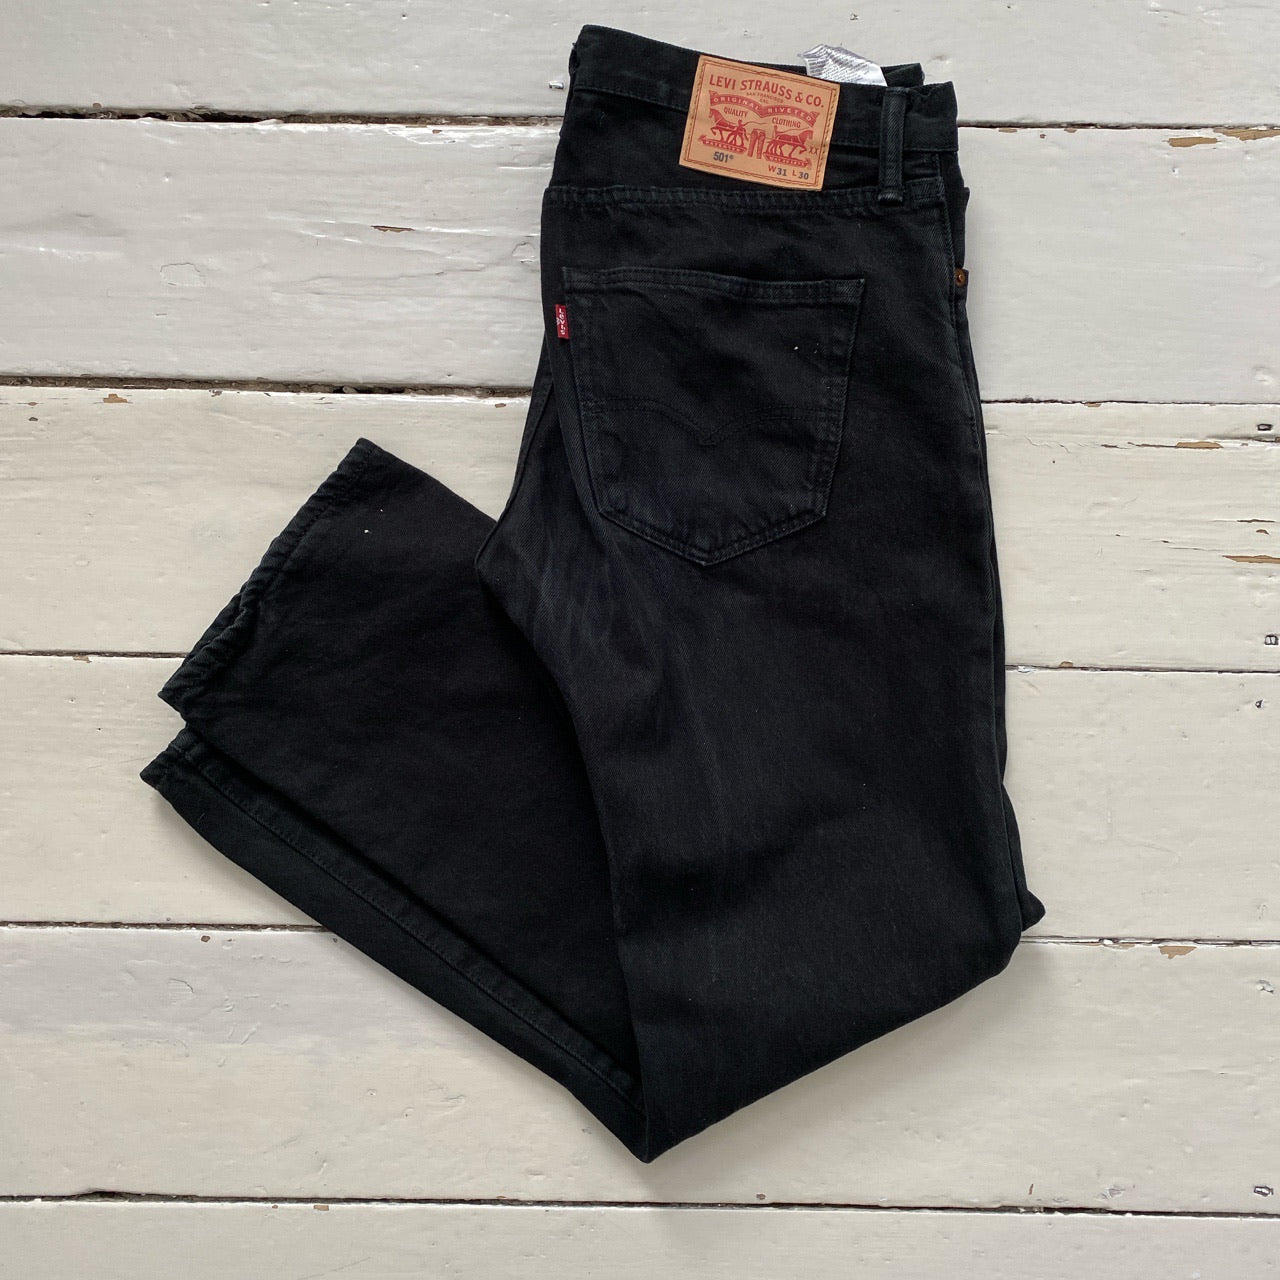 Levis 501 Black Jeans (31/30)